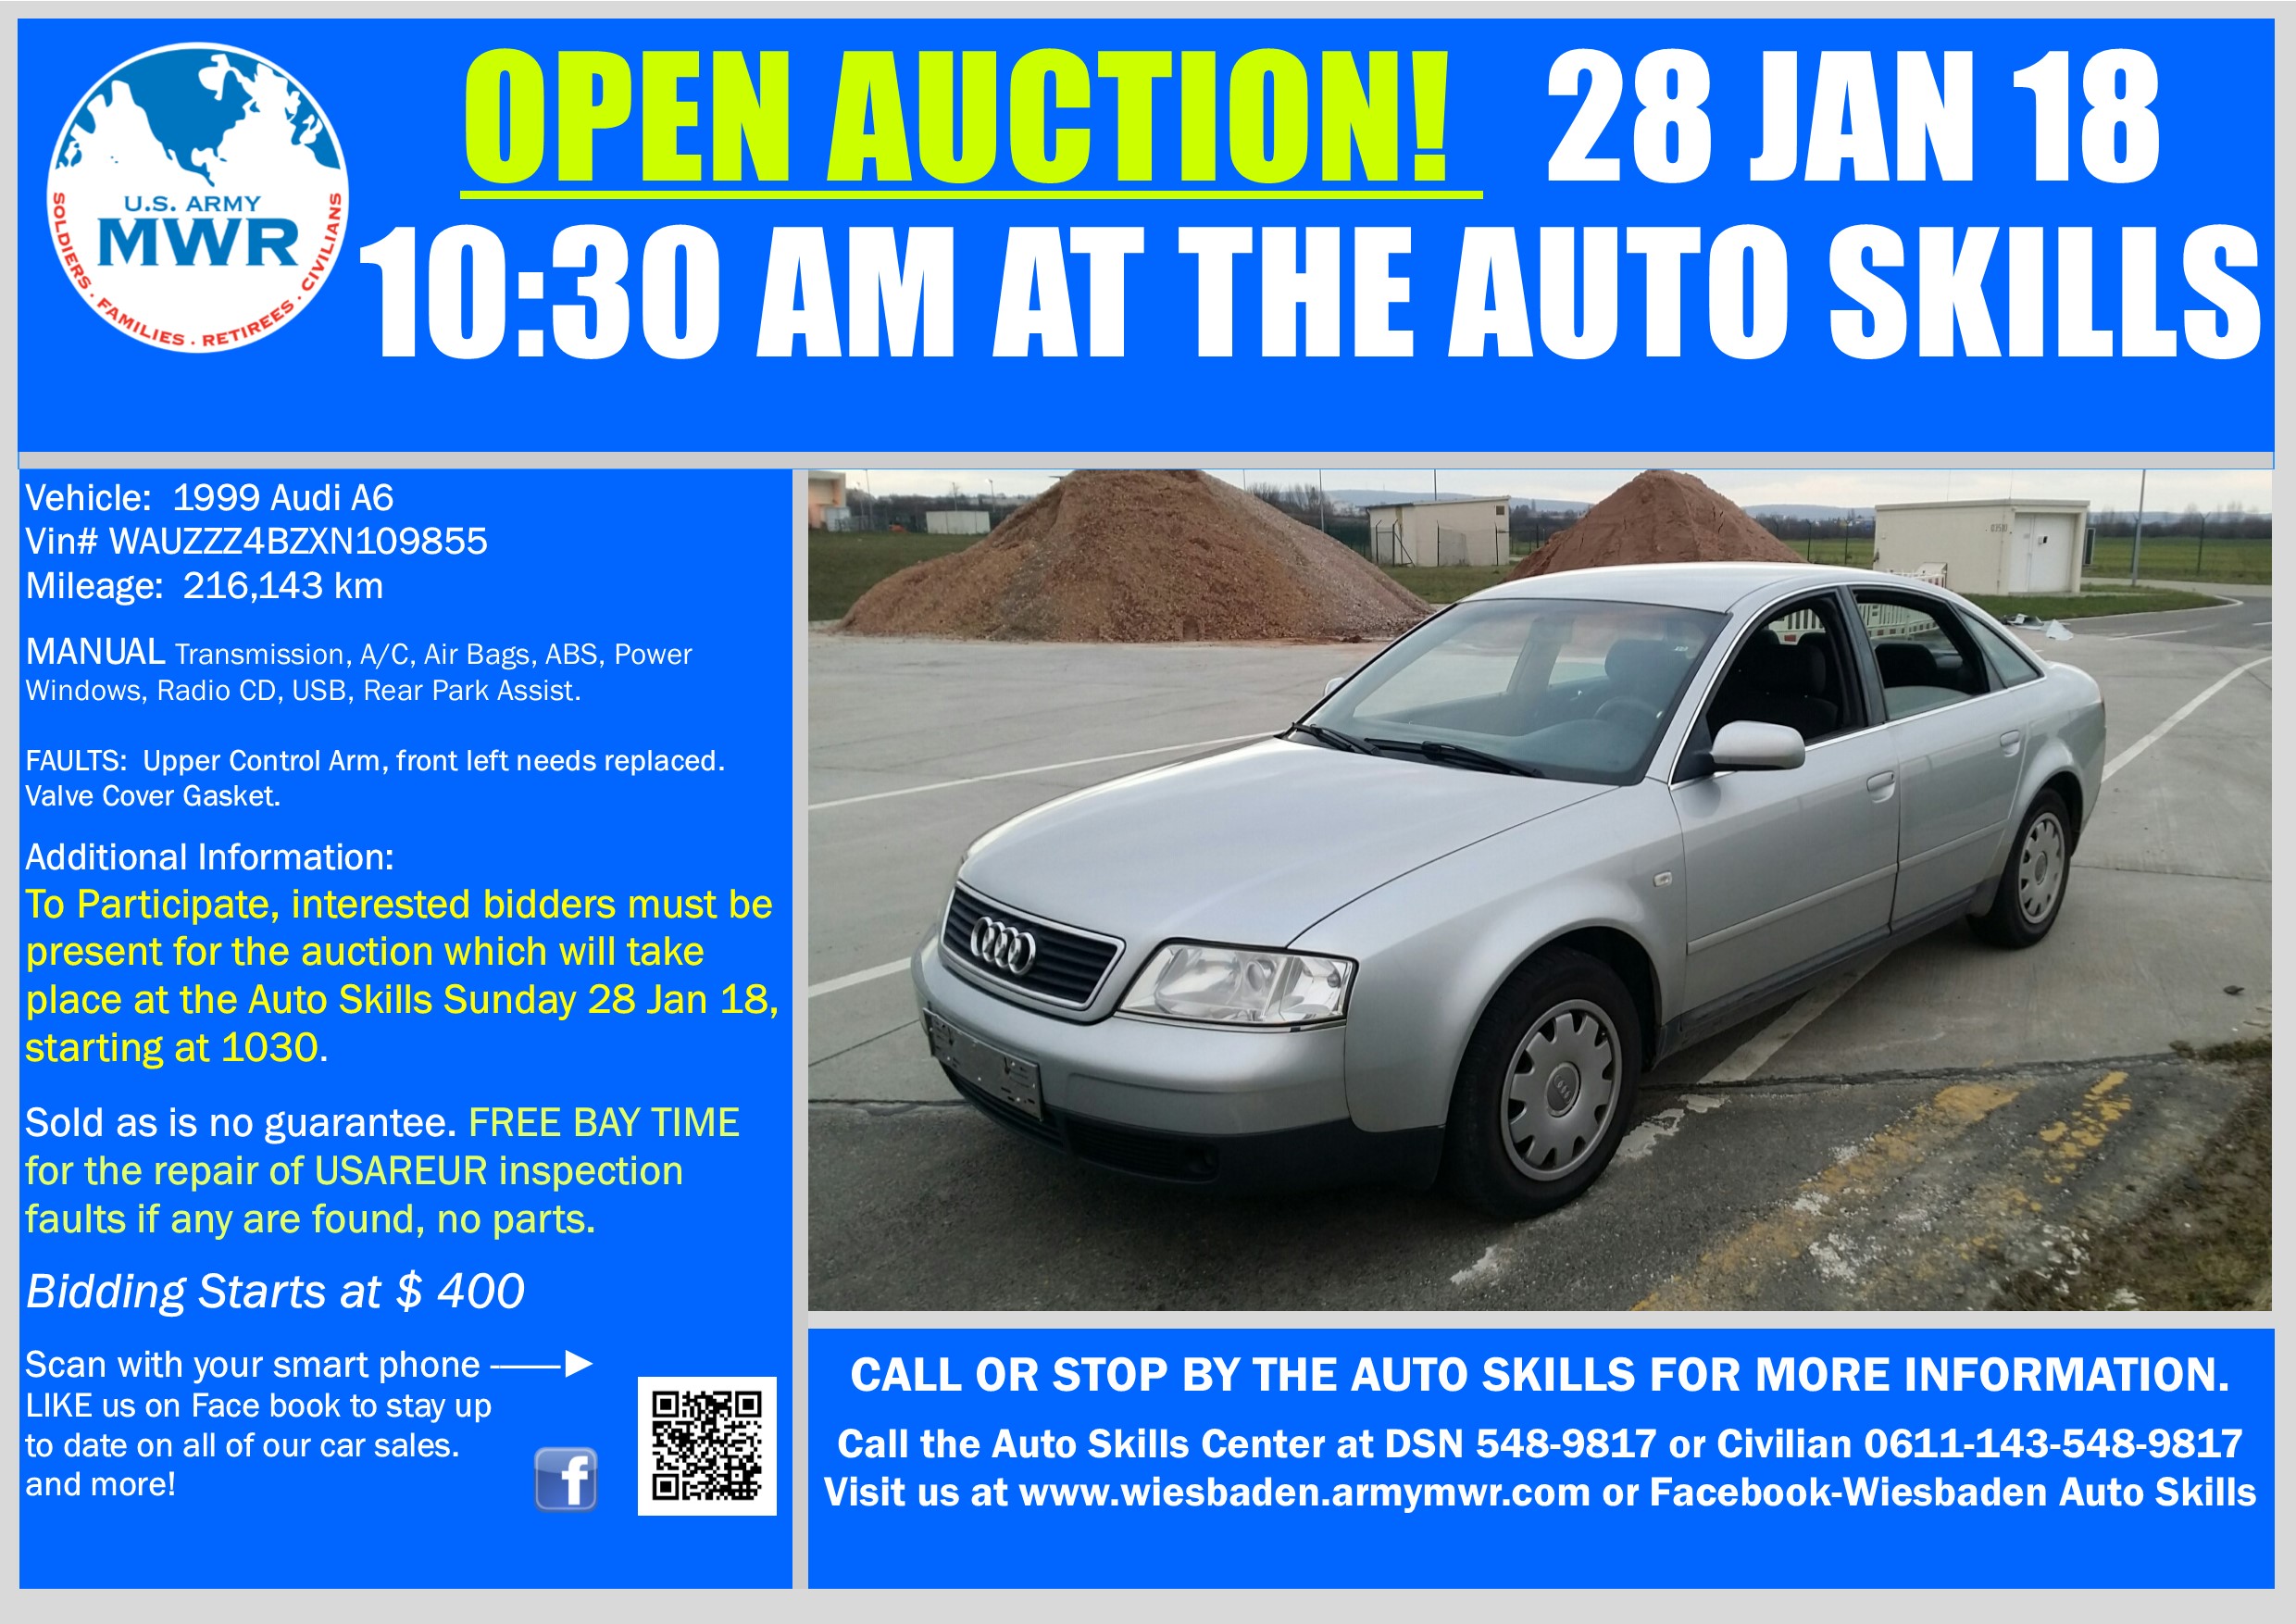 Sale_Audi A6  28  Jan 18 Open Auction.jpg